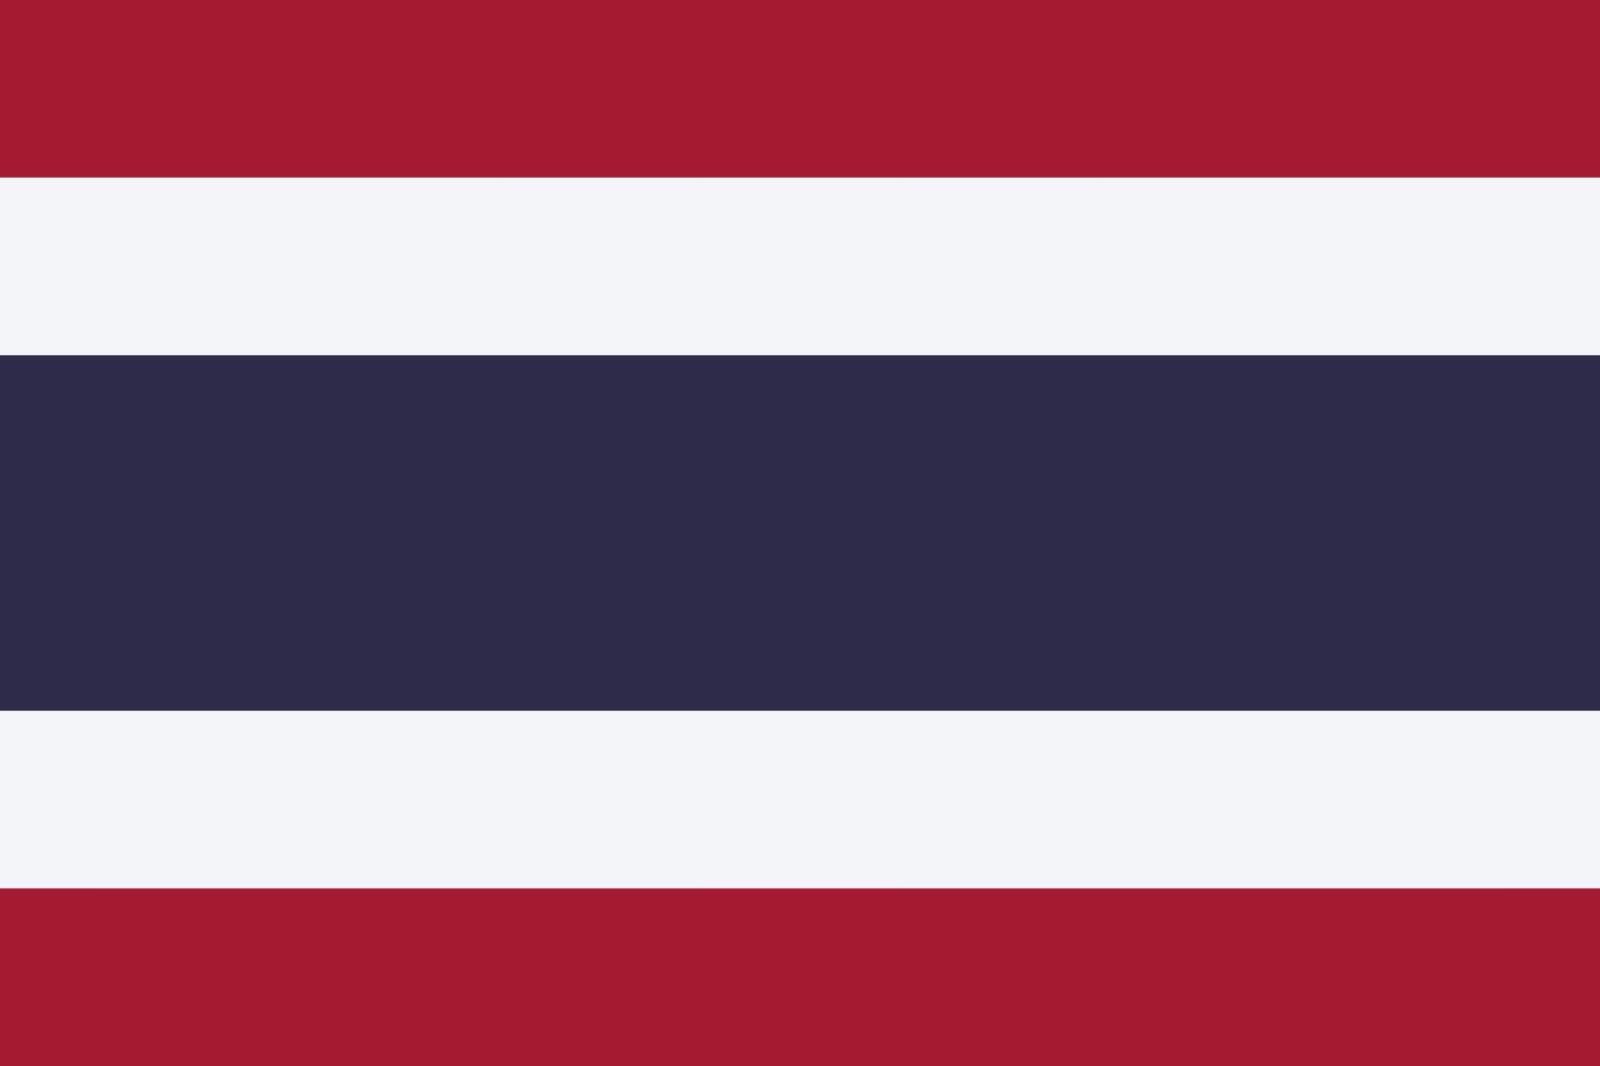 Galerie des drapeaux des pays du monde — Wikipédia